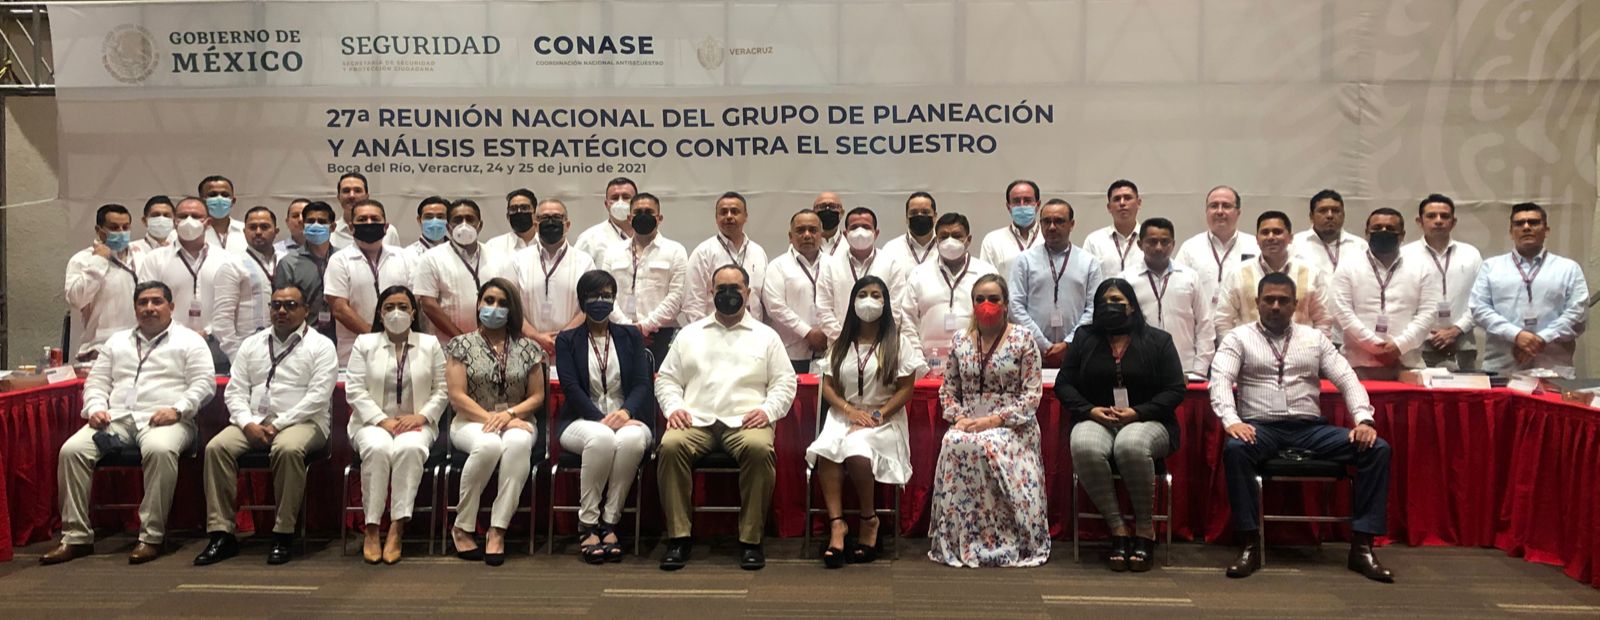 Fiscalía General, presente en la 27a Reunión Nacional del Grupo de Planeación y Análisis Estratégico contra el Secuestro, celebrada en Veracruz